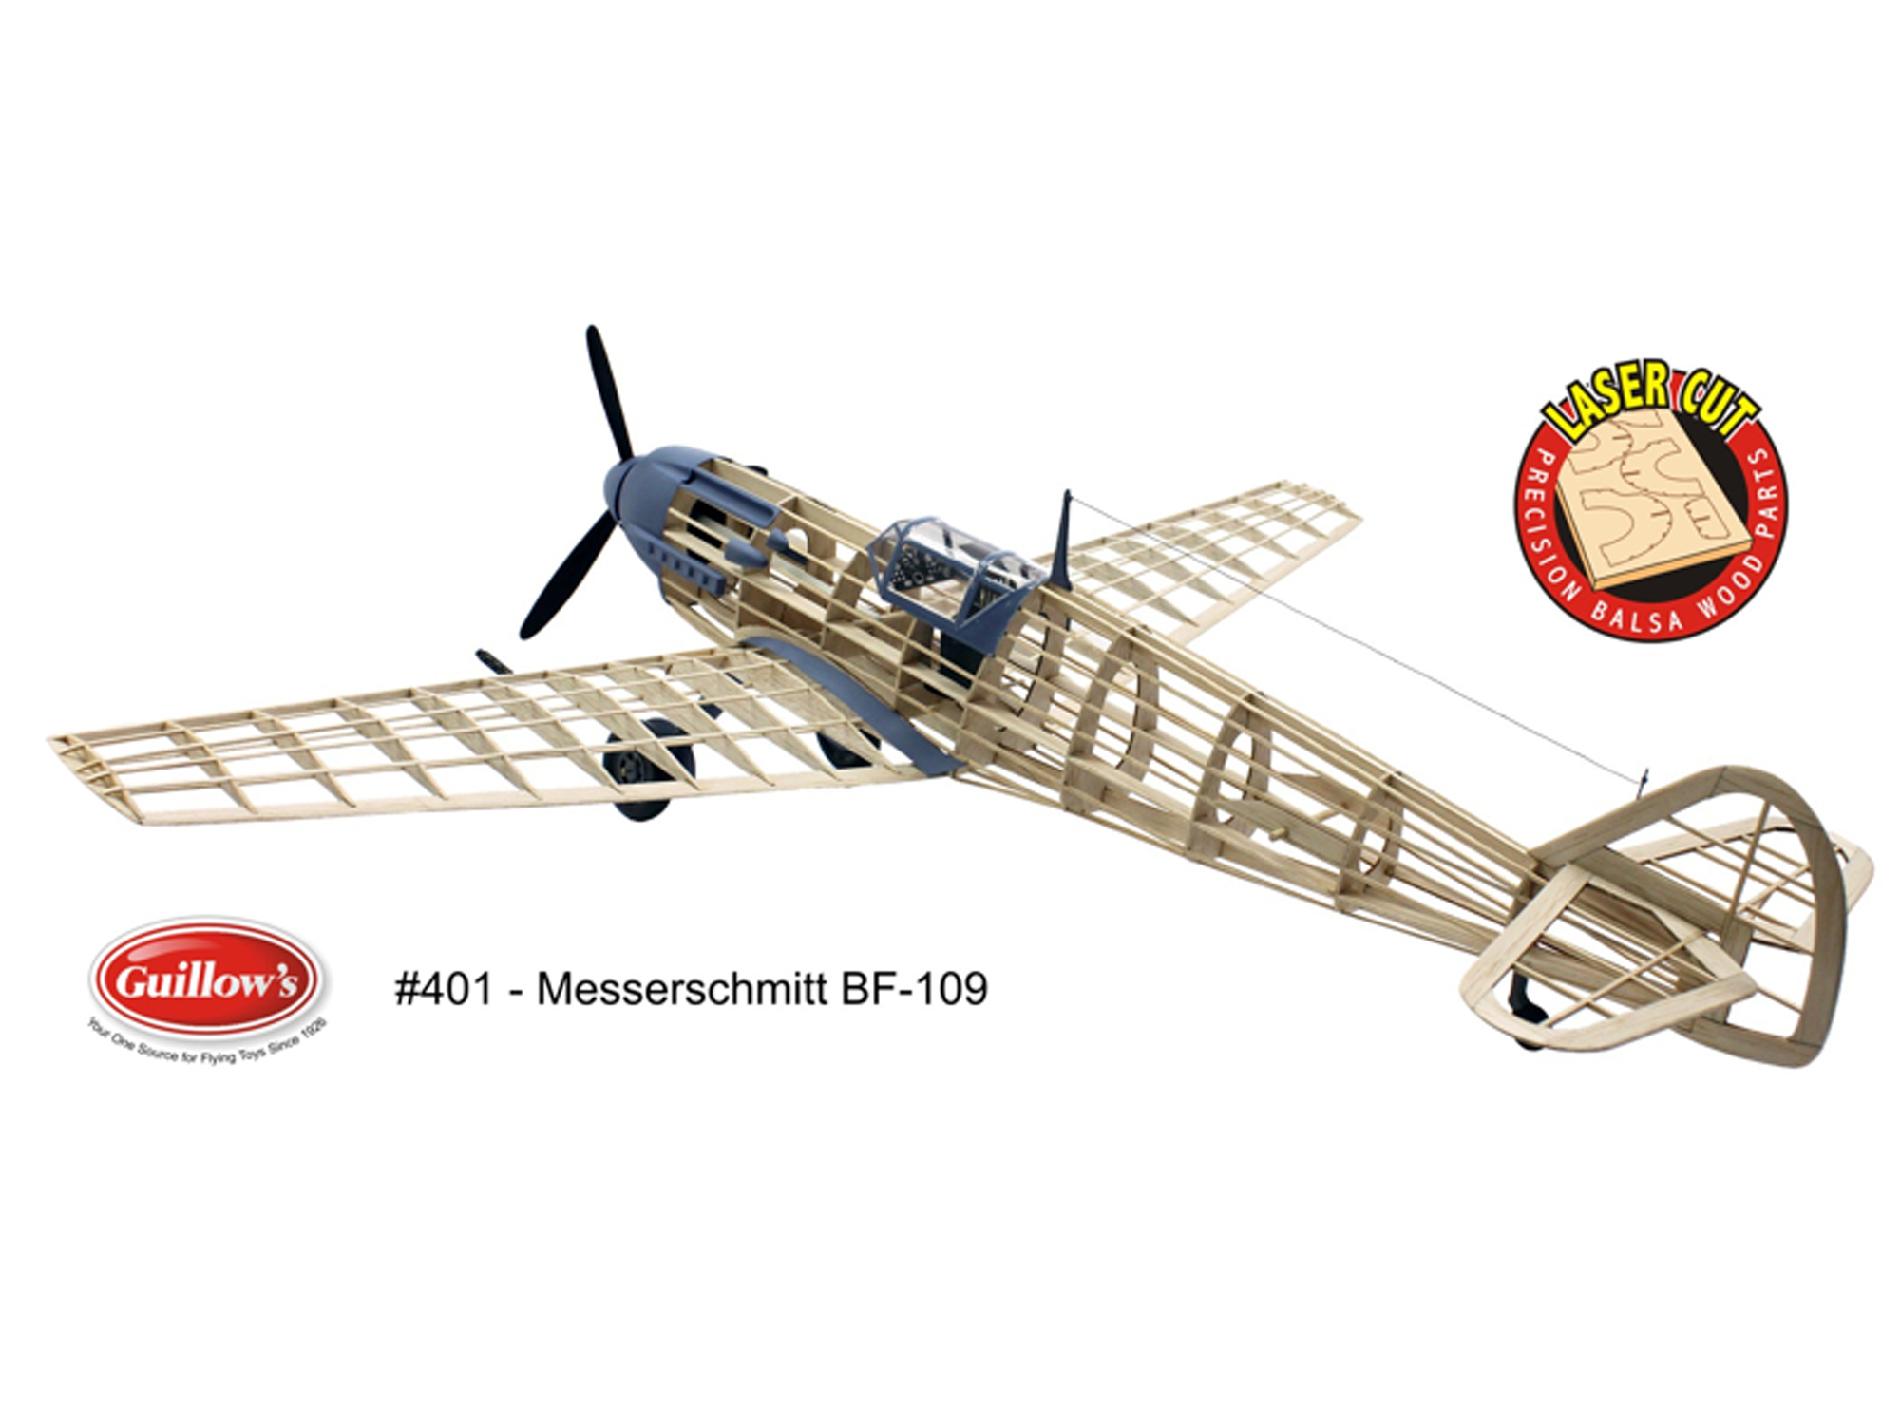 Guillow's Messerschmitt Laser Cut Model Kit